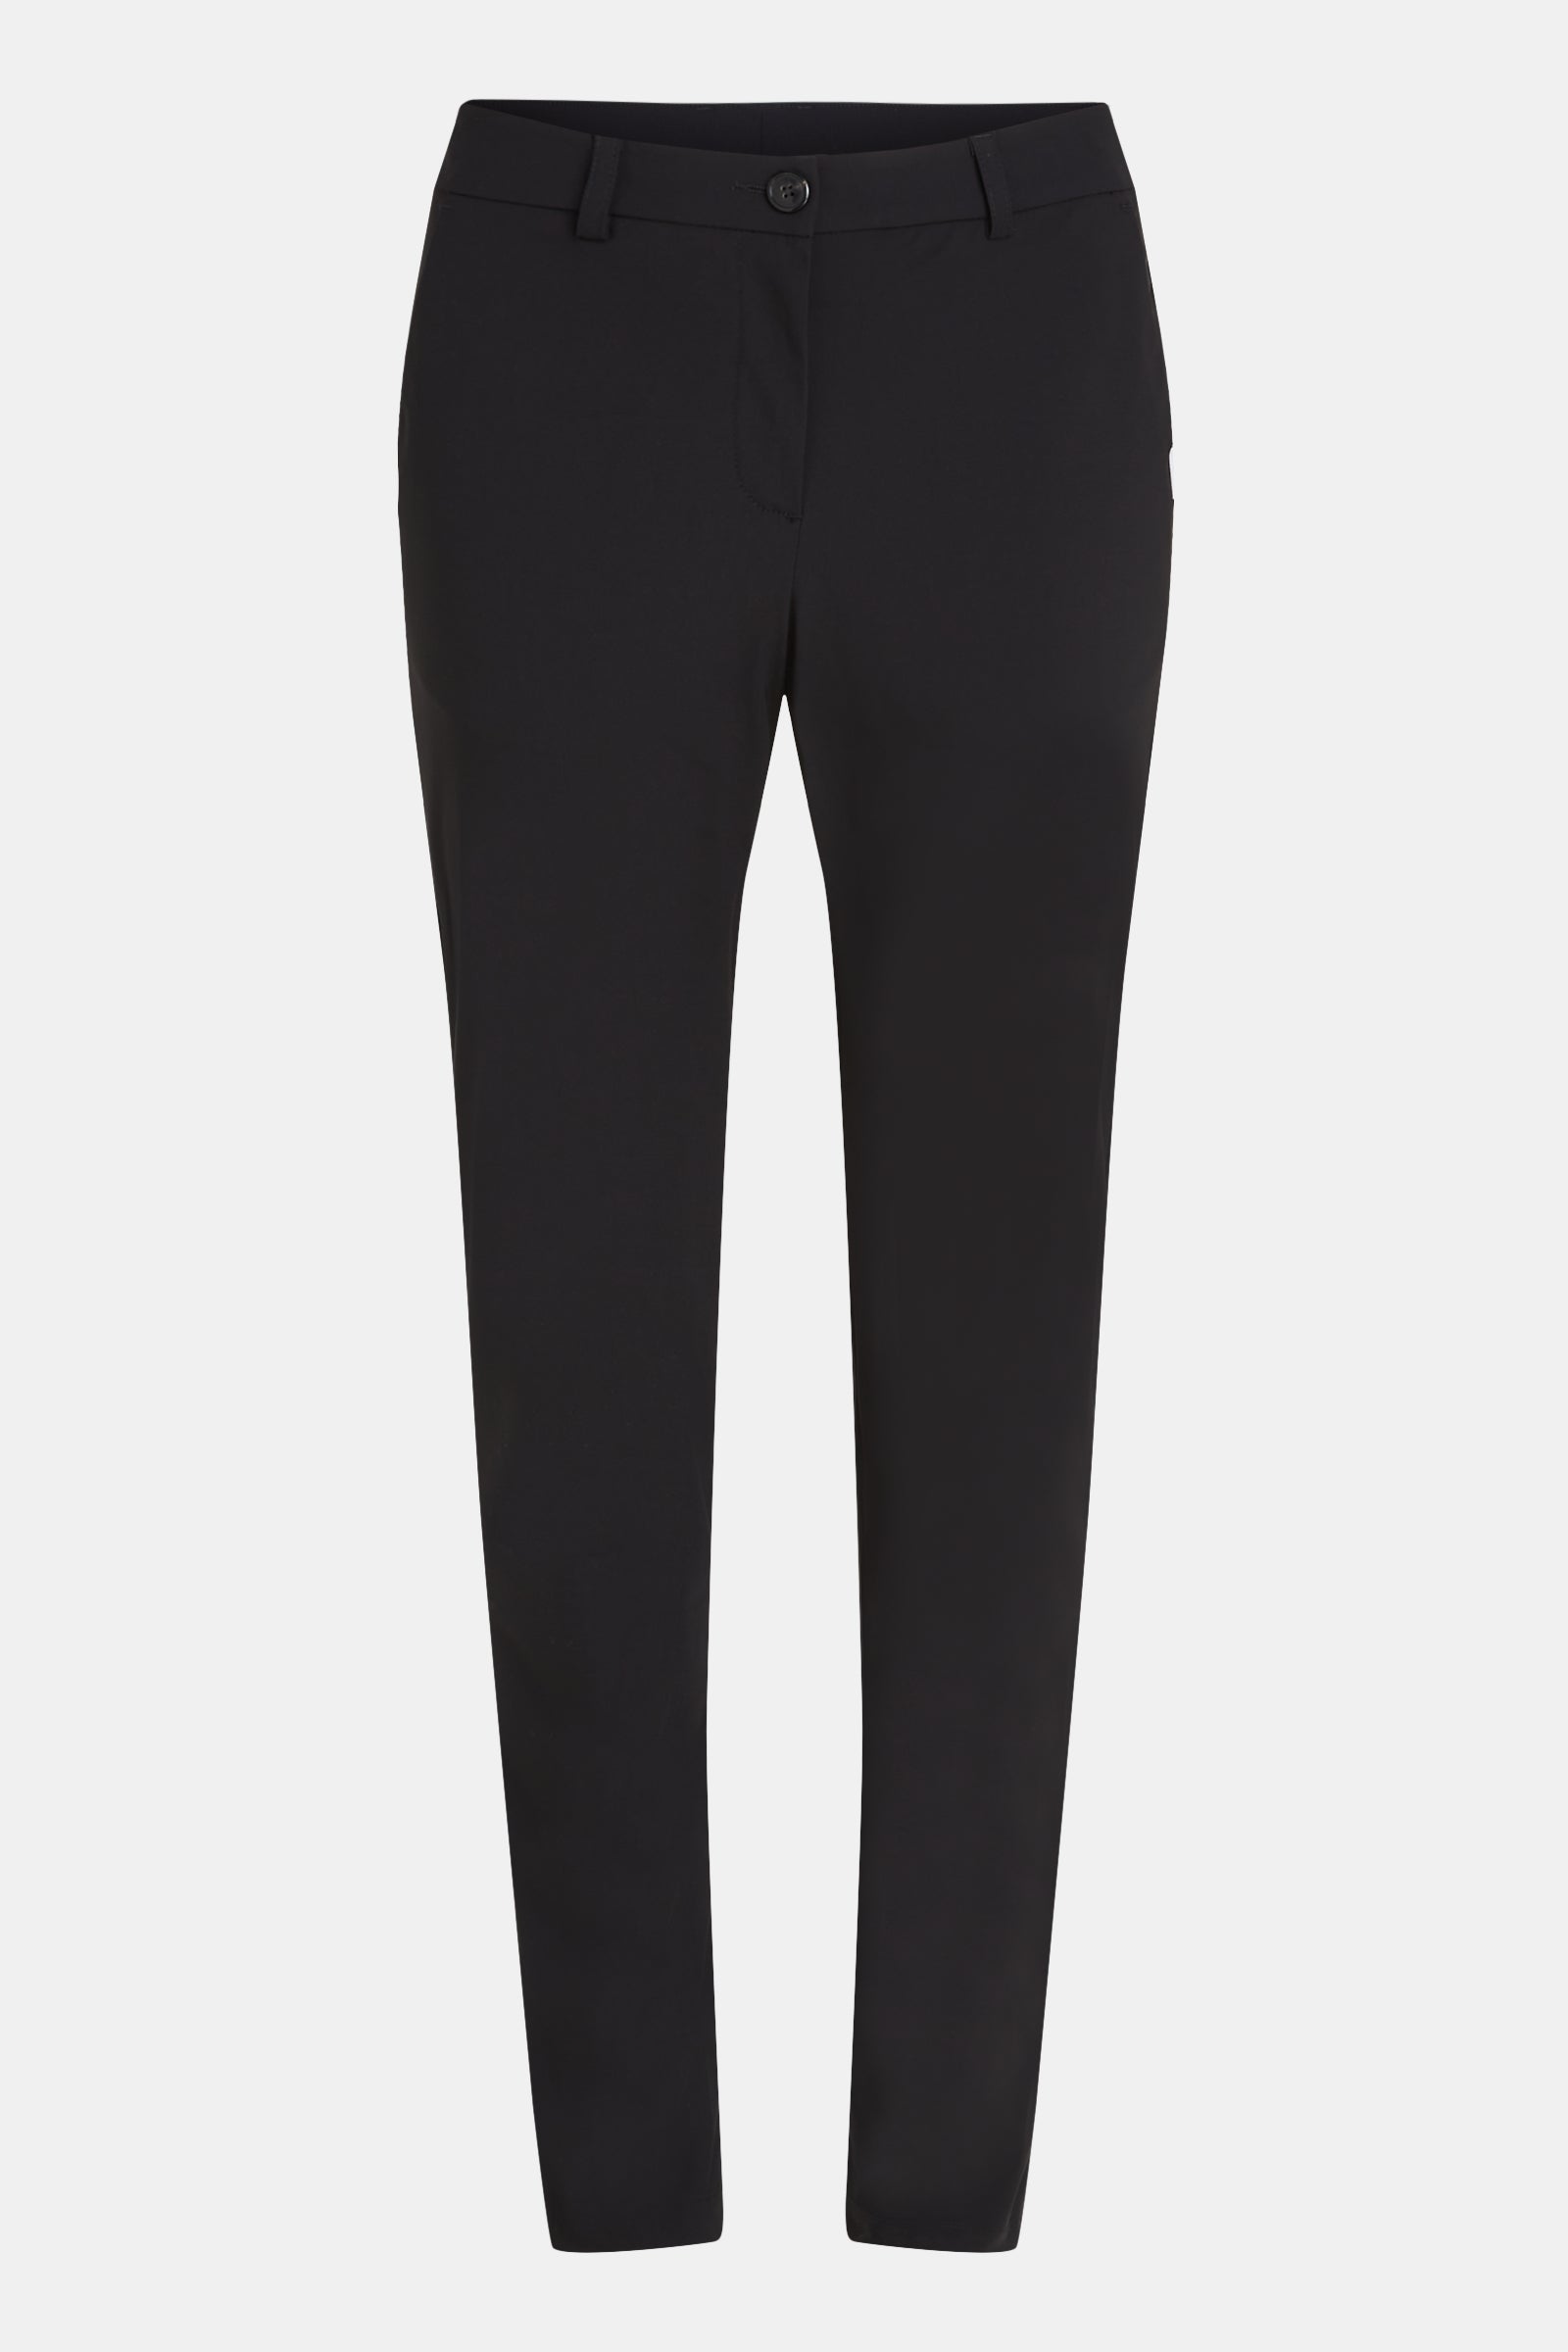 Trousers (W23N1433) Black | Penn&Ink N.Y